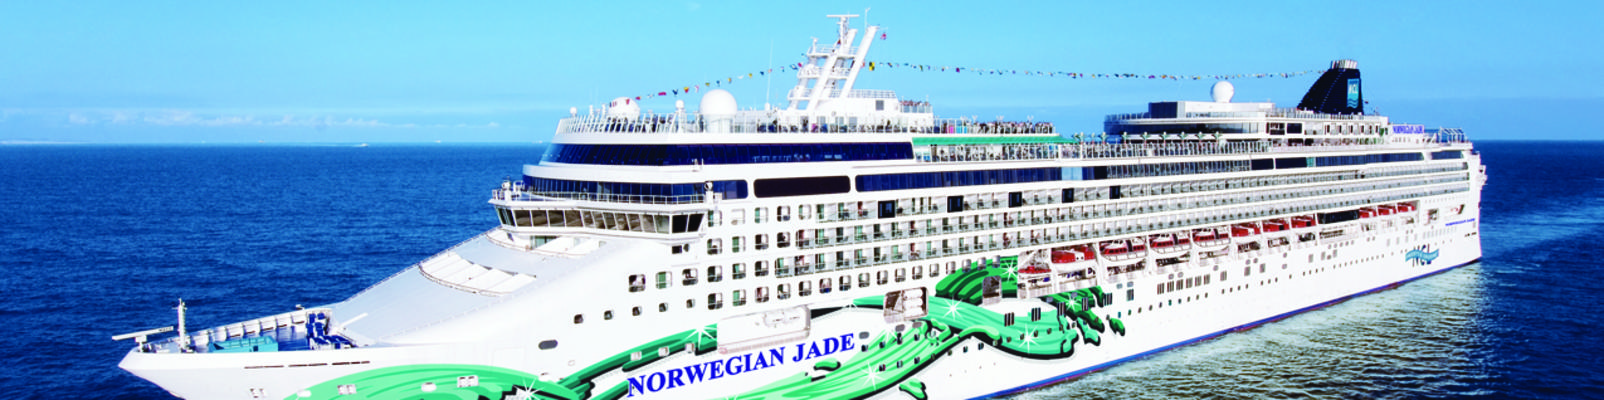 Norwegian Jade Cruise Line